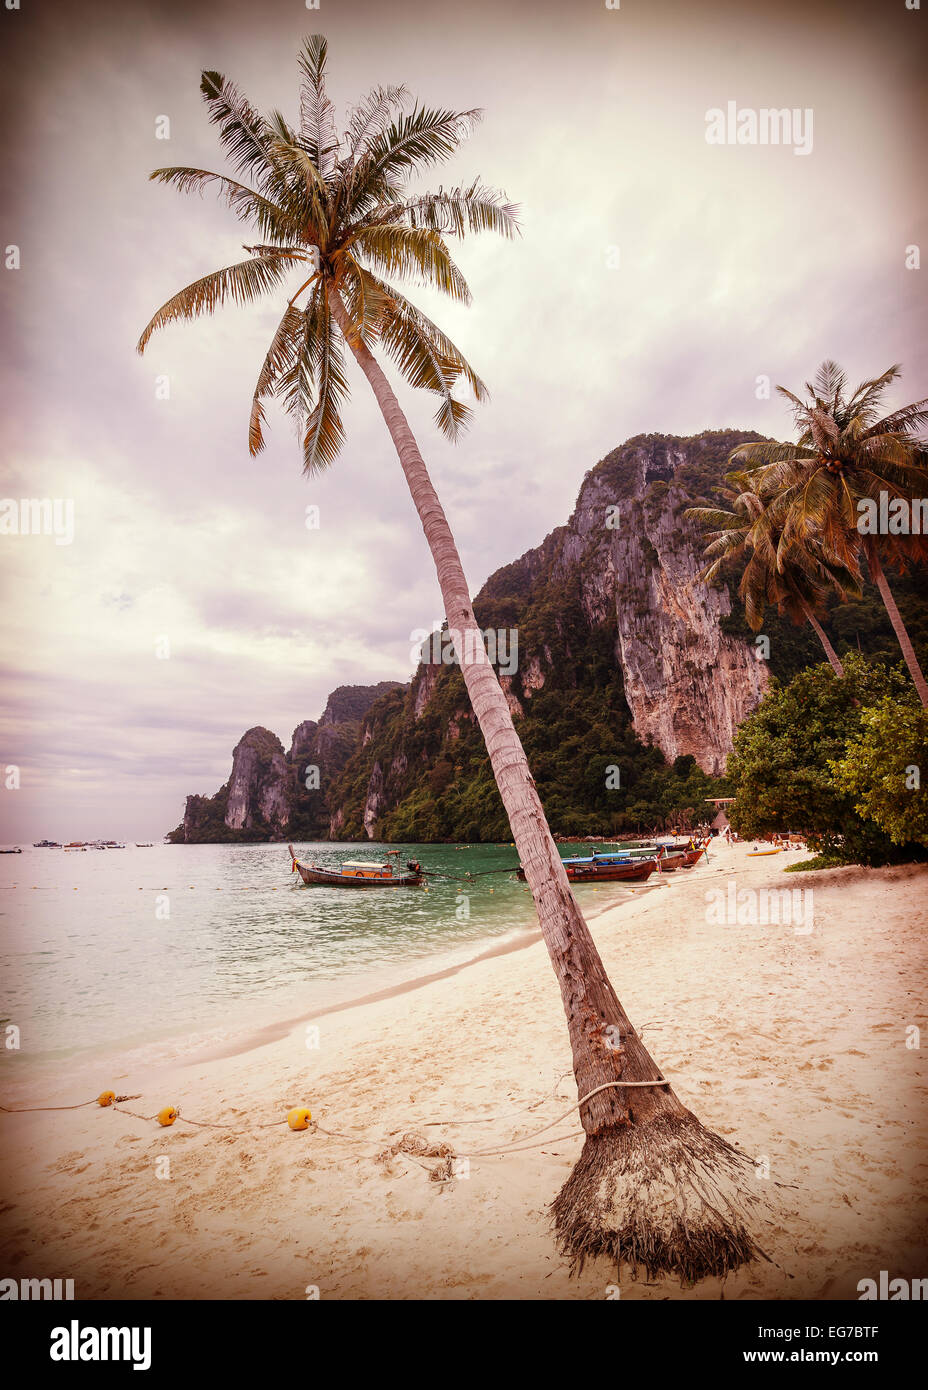 Vintage retrò stilizzata spiaggia tropicale con palme. Foto Stock